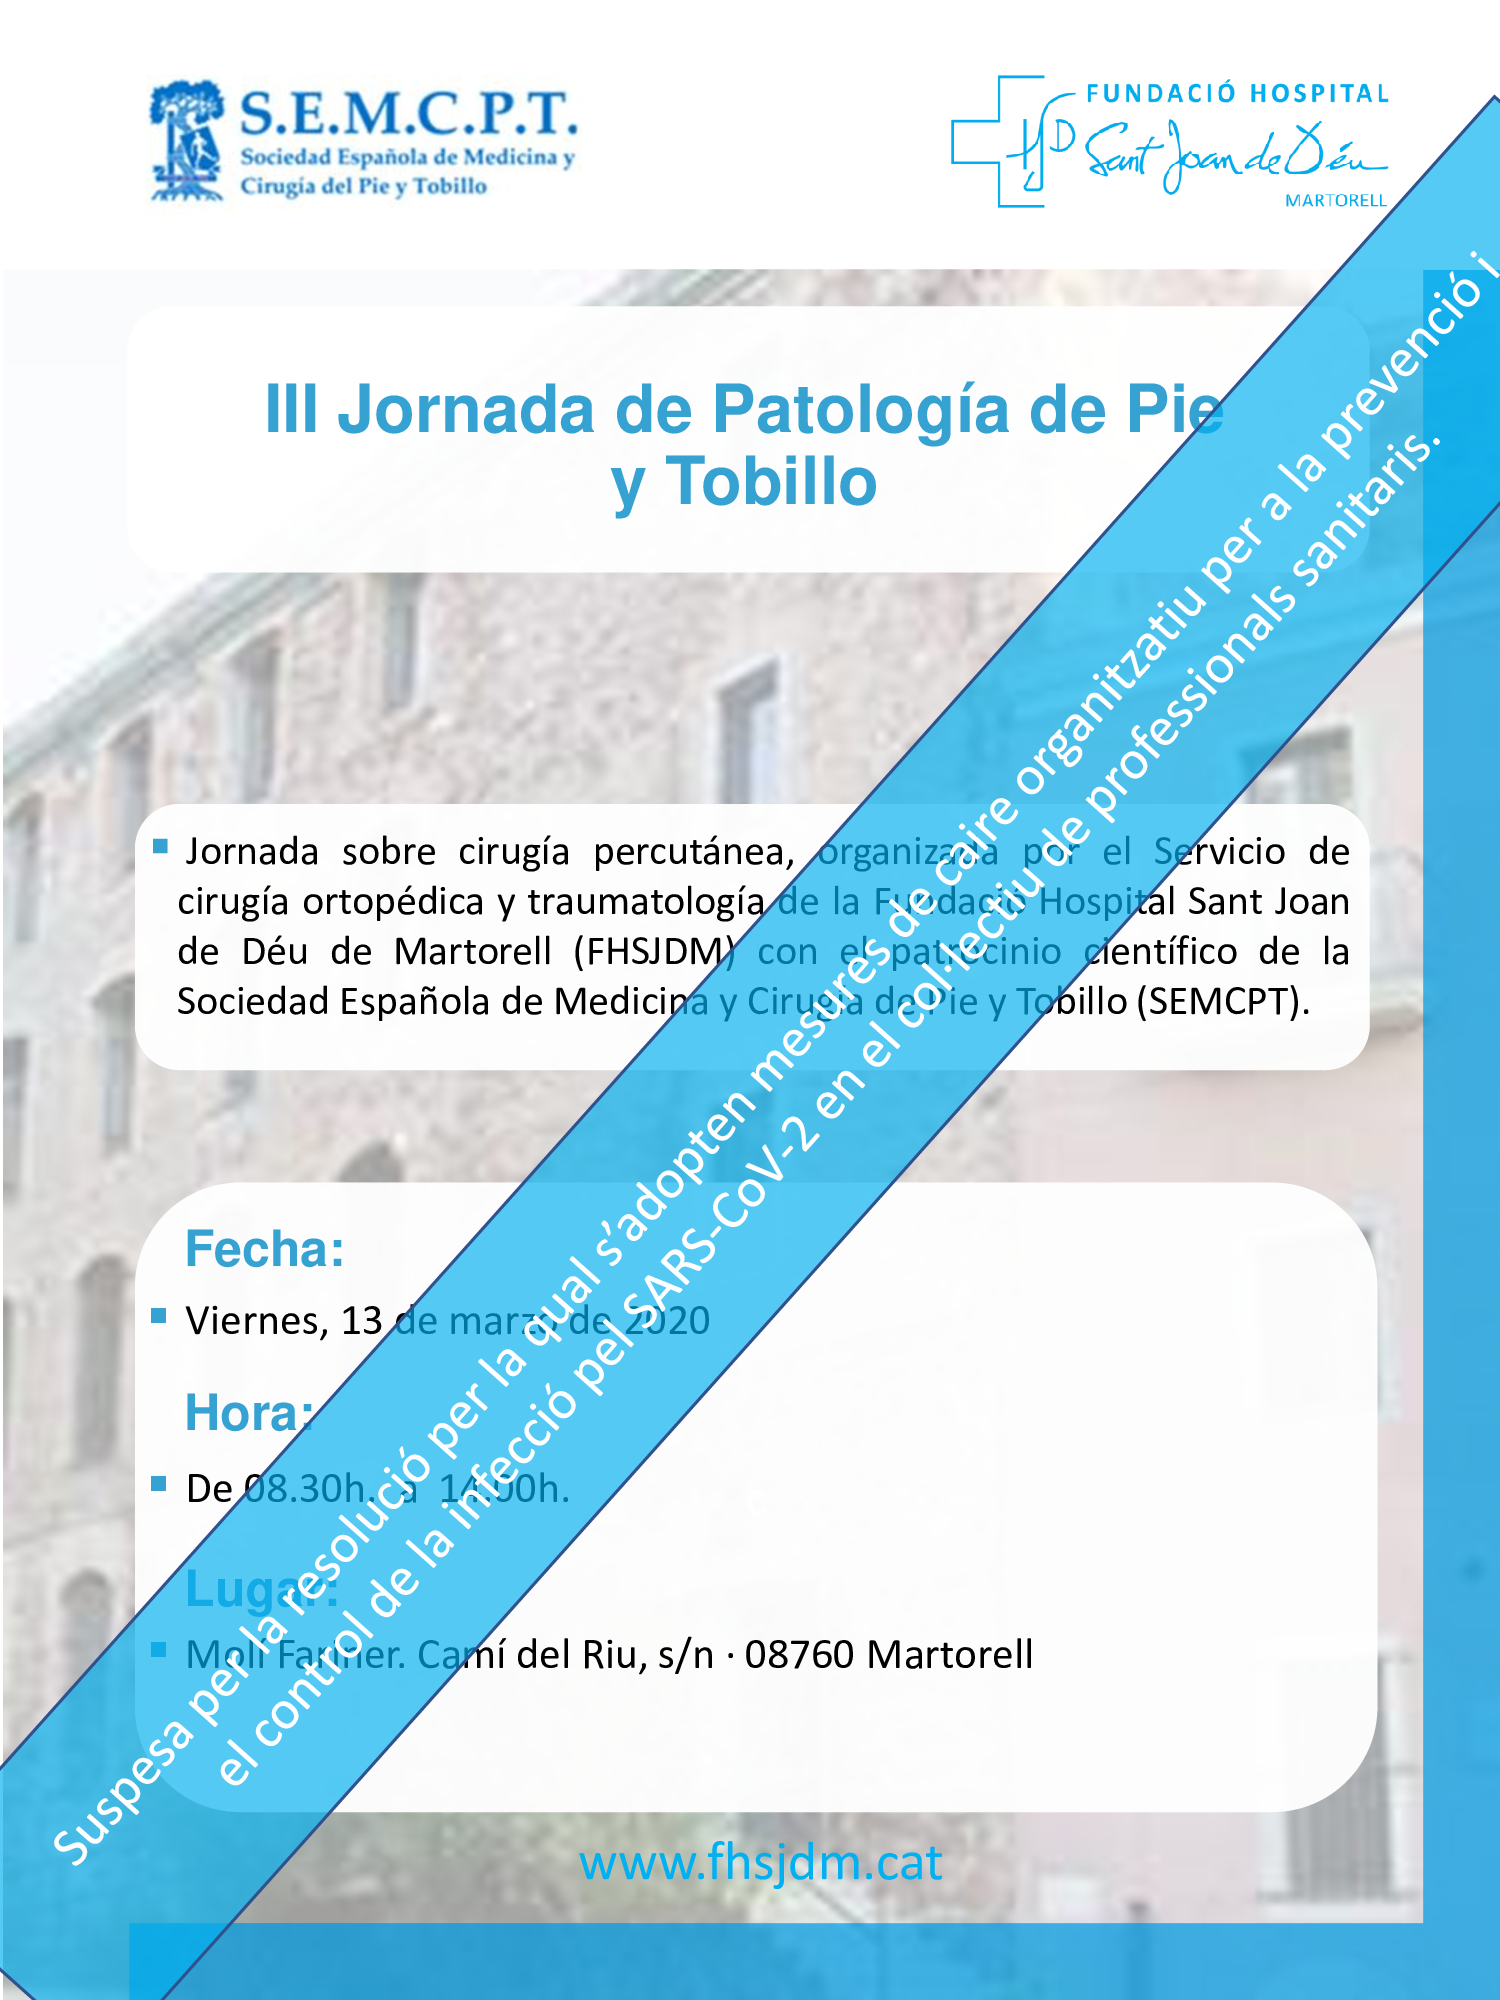 III JORNADA DE PATOLOGIA DE PIE Y TOBILLO “Con el patrocinio científico de la Sociedad Española de Medicina y Cirugía del Pie y Tobillo”